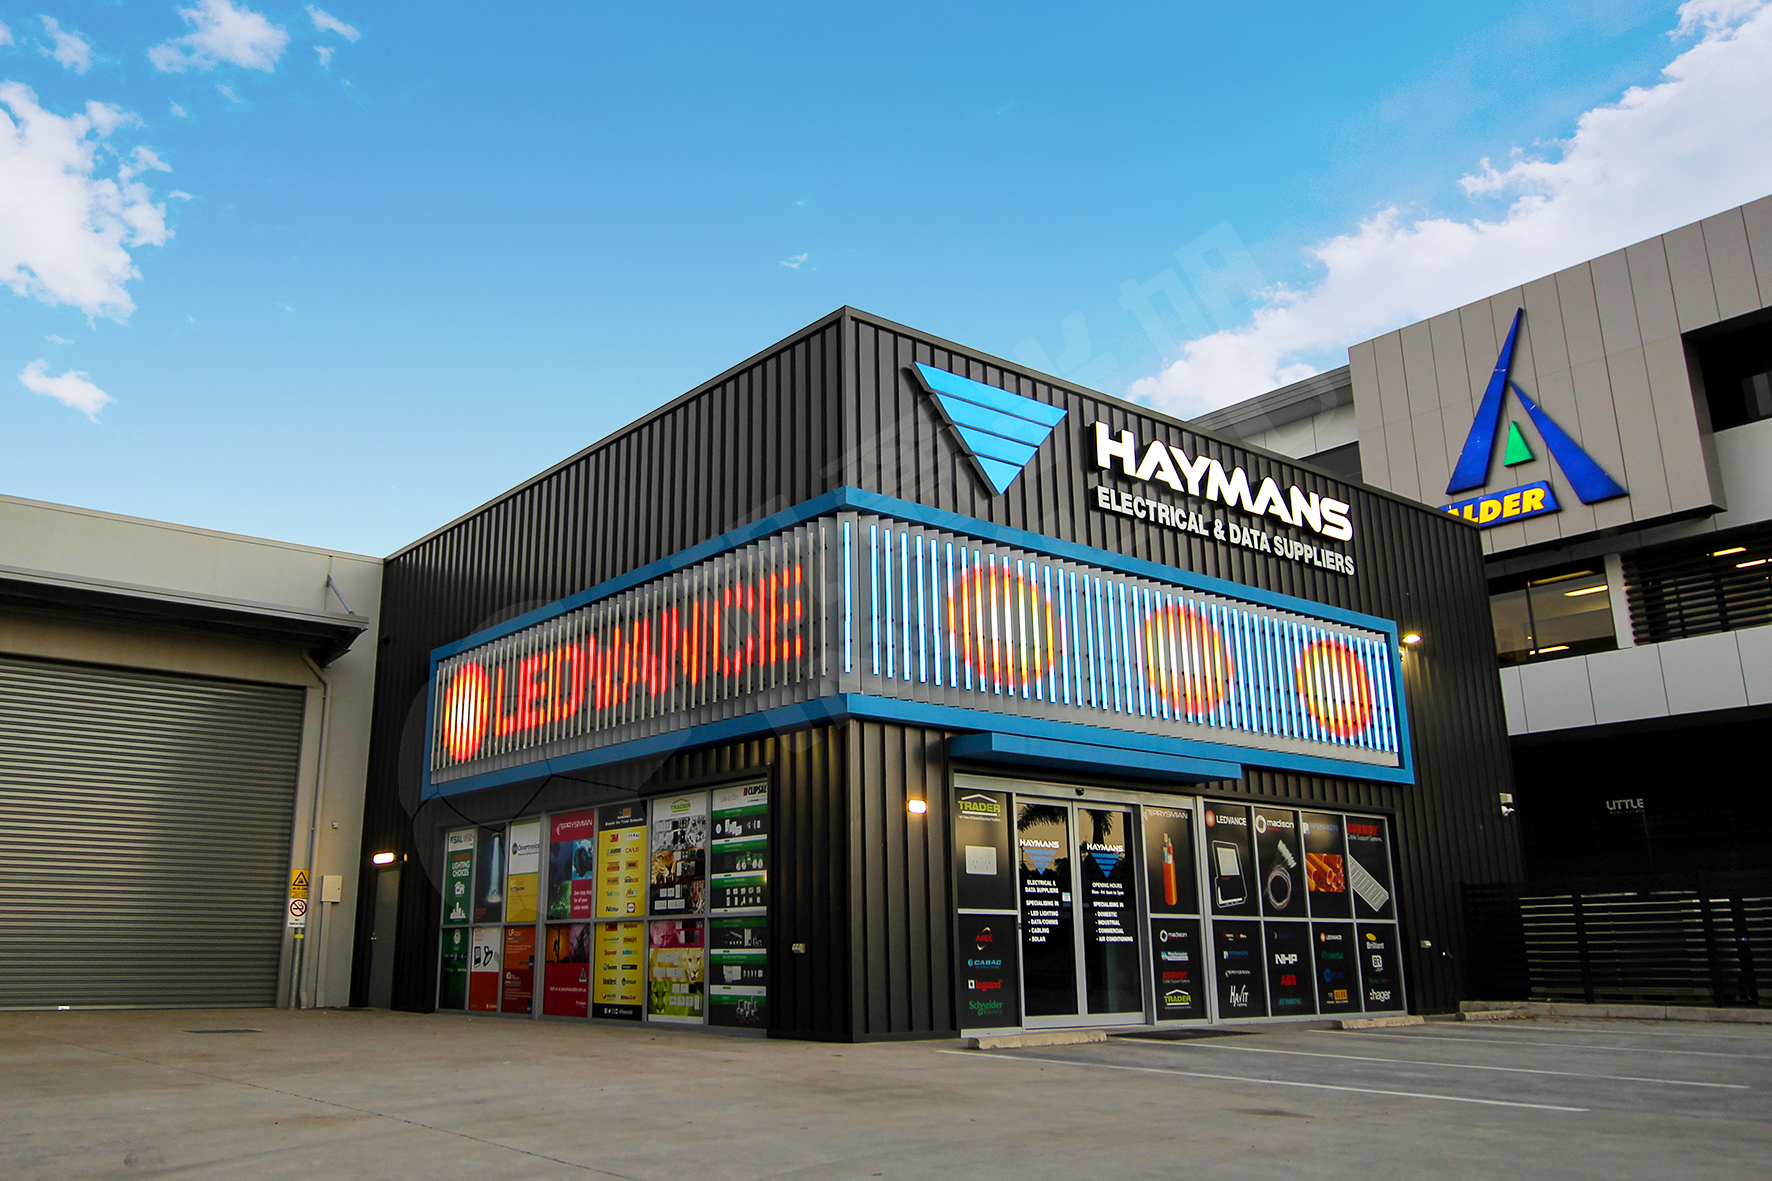 视爵光旭为澳大利亚的海曼电子公司线下实体商店安装LED条形屏